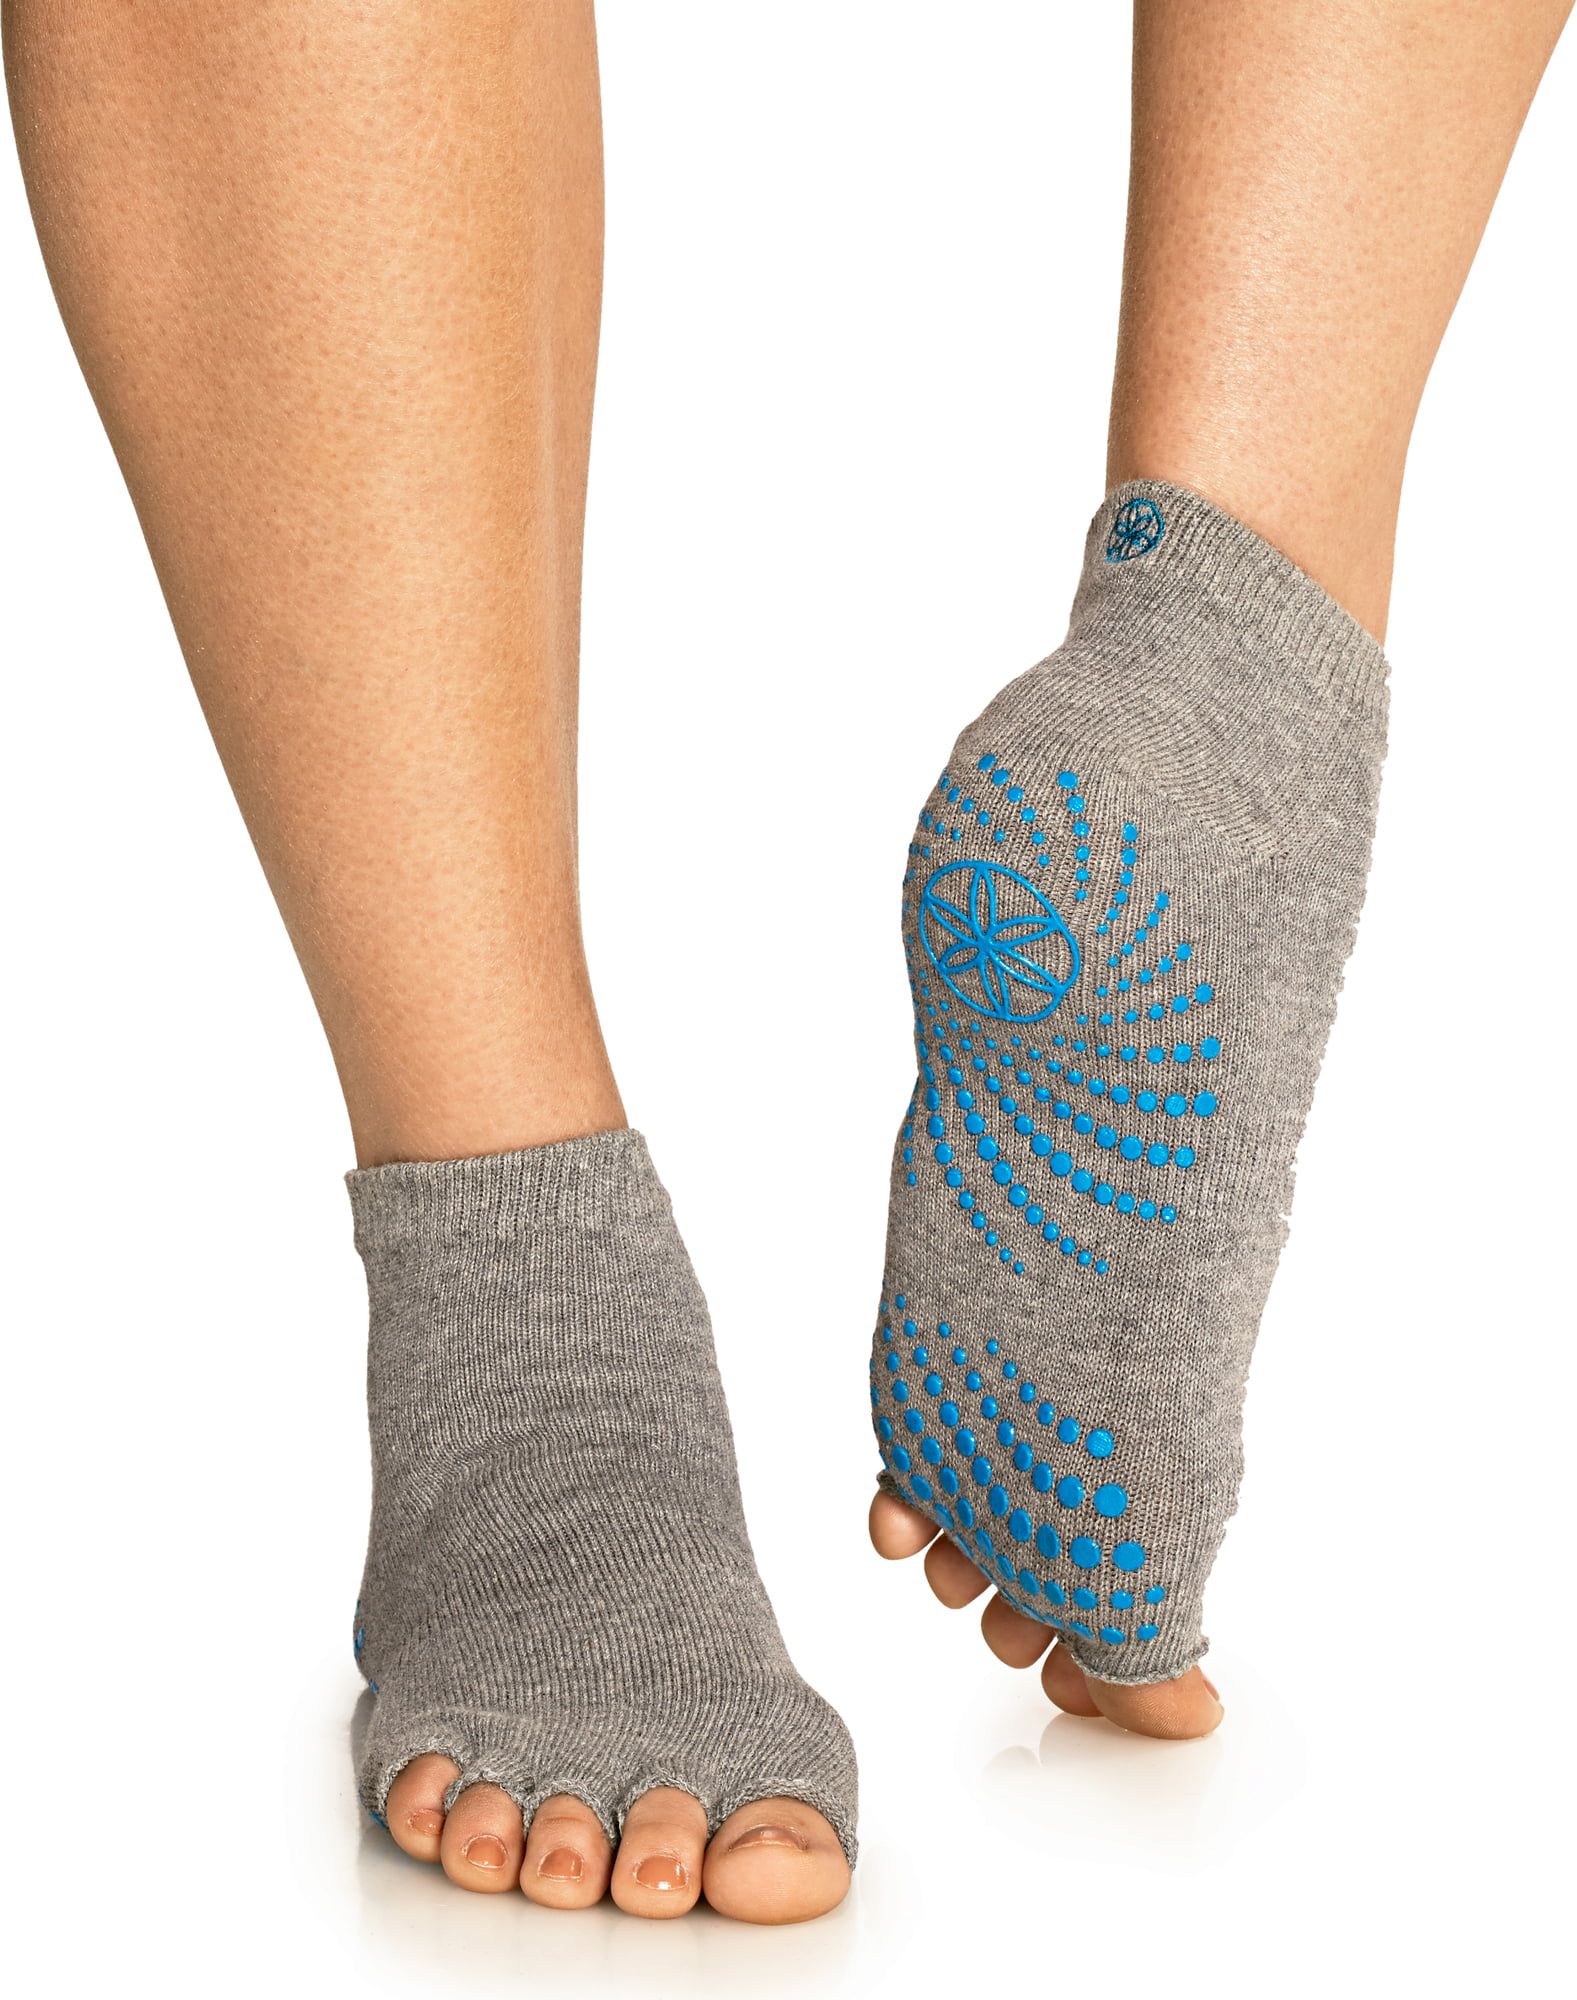 GAIAM, Other, Gaiam Yoga Noslip Socks Gloves